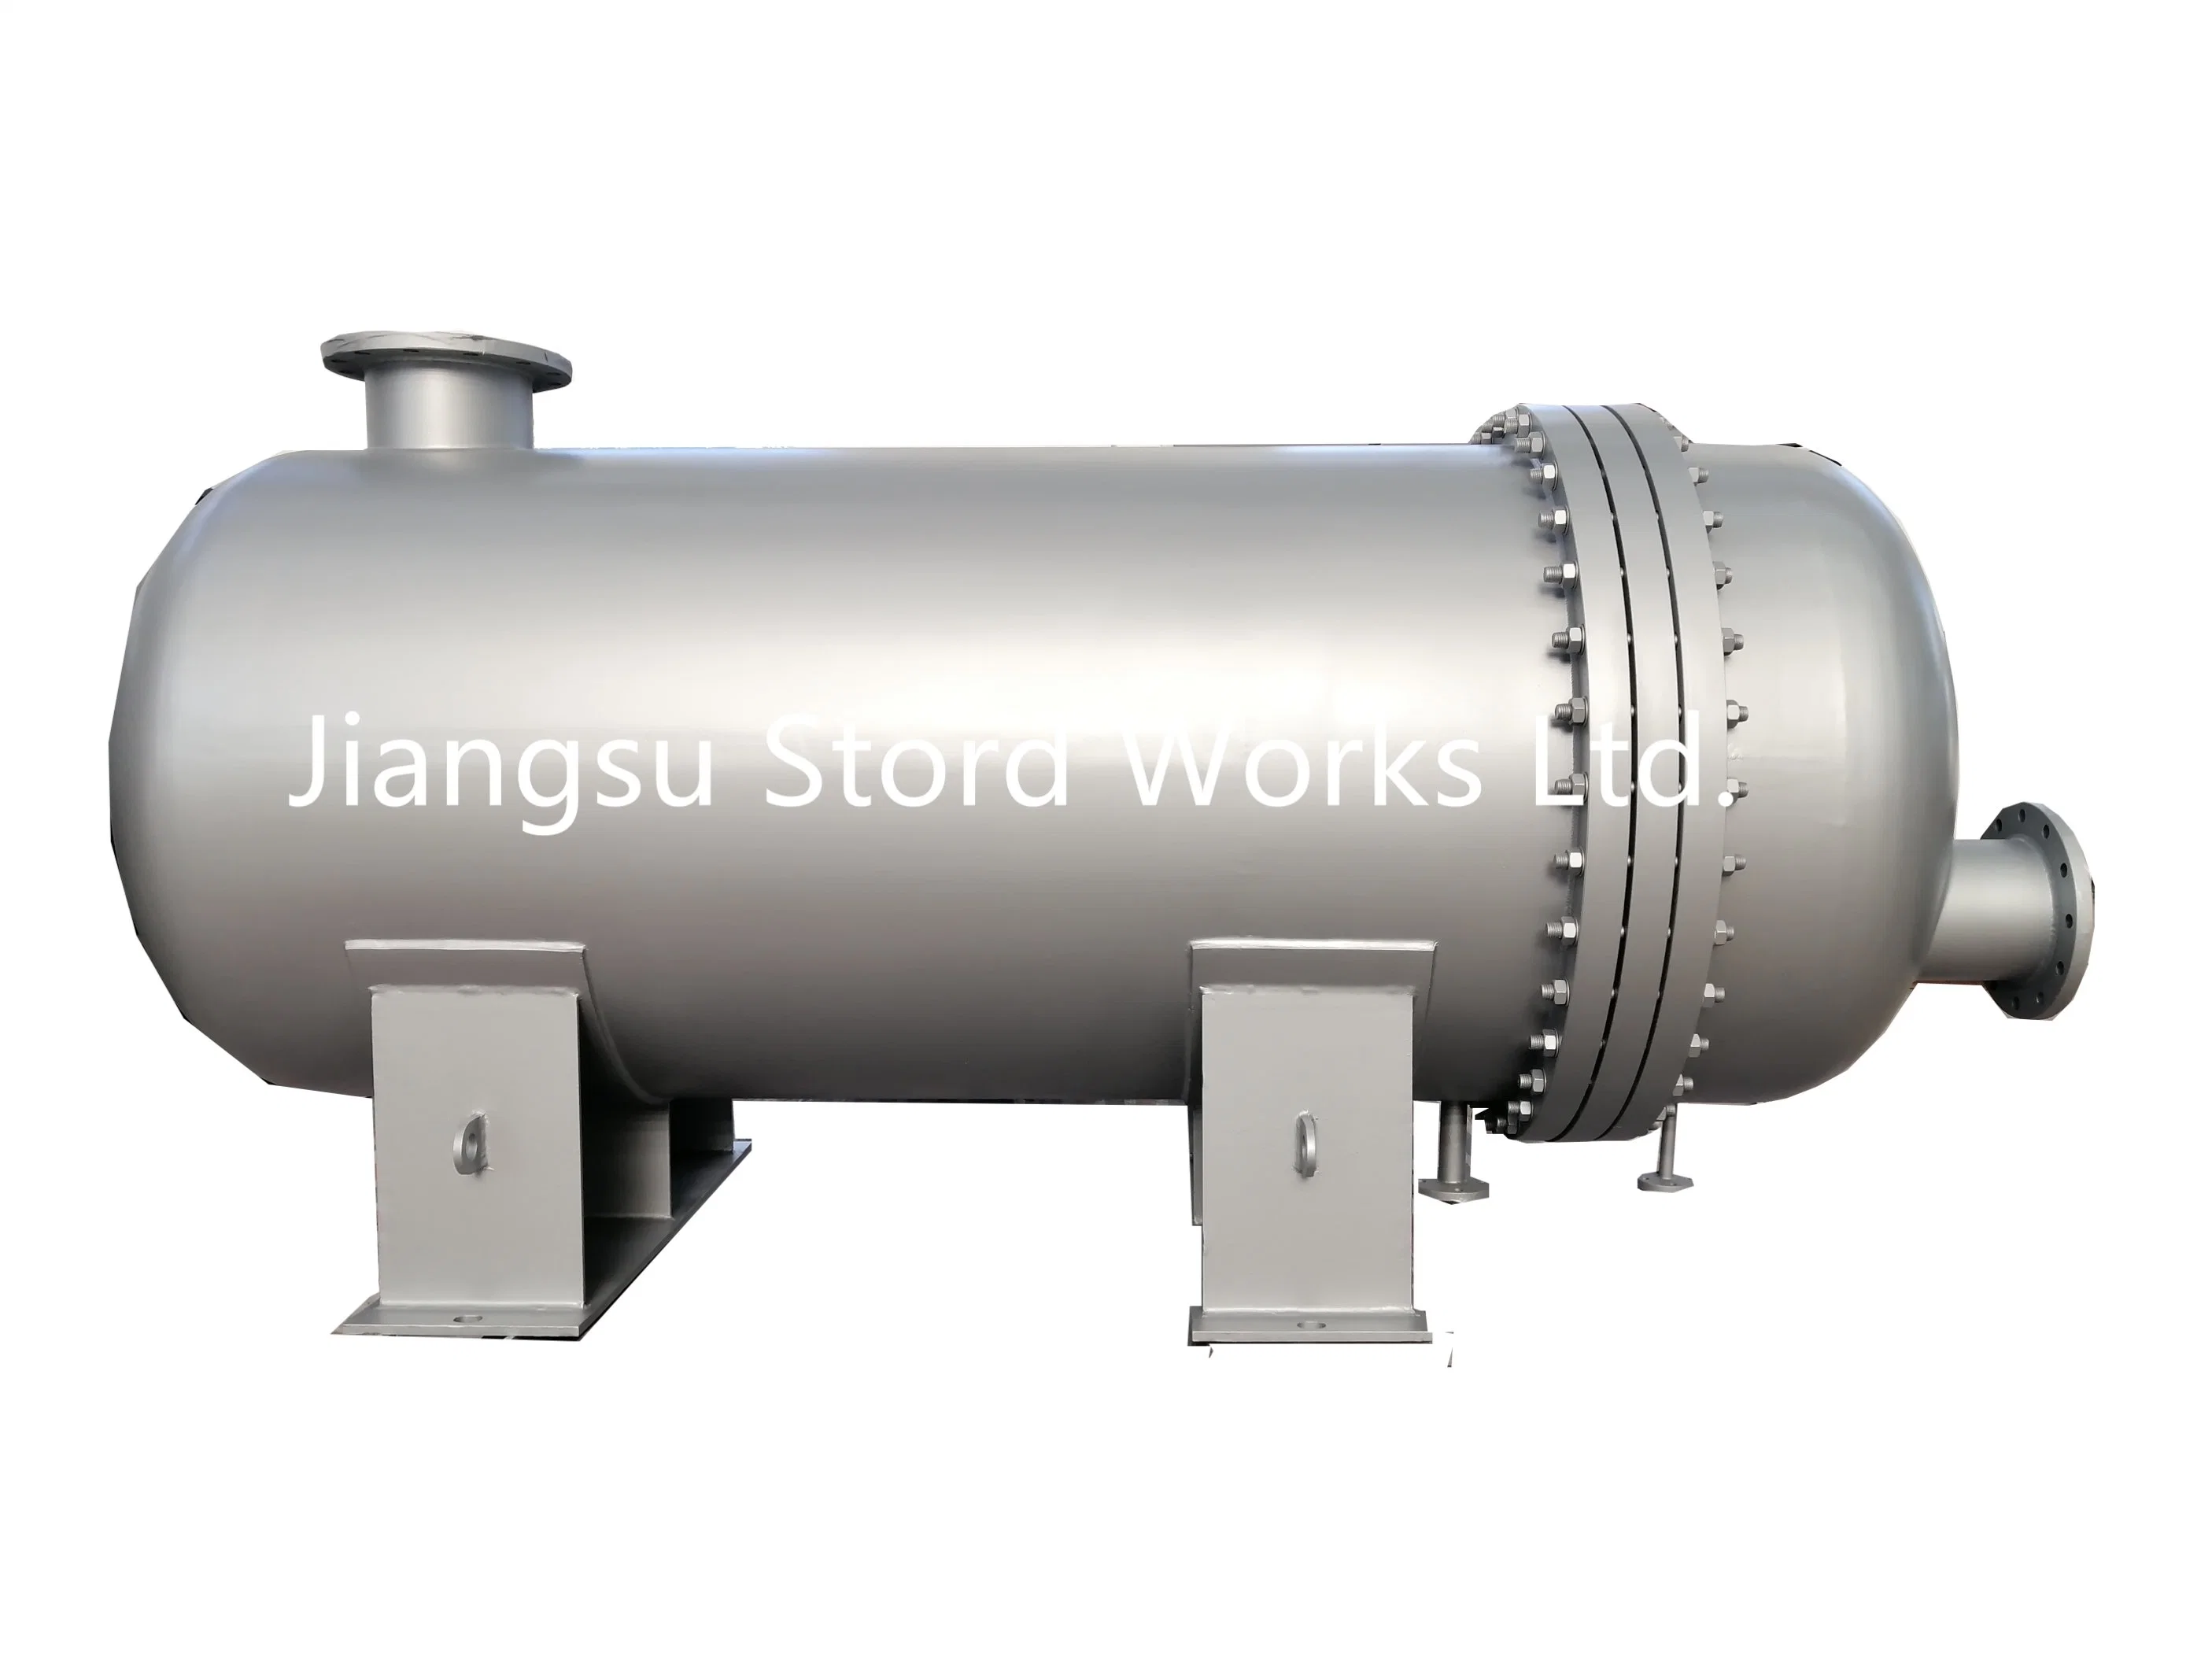 Stordworks Venta caliente Reactor Tubular vasija de presión para la planta de fabricación